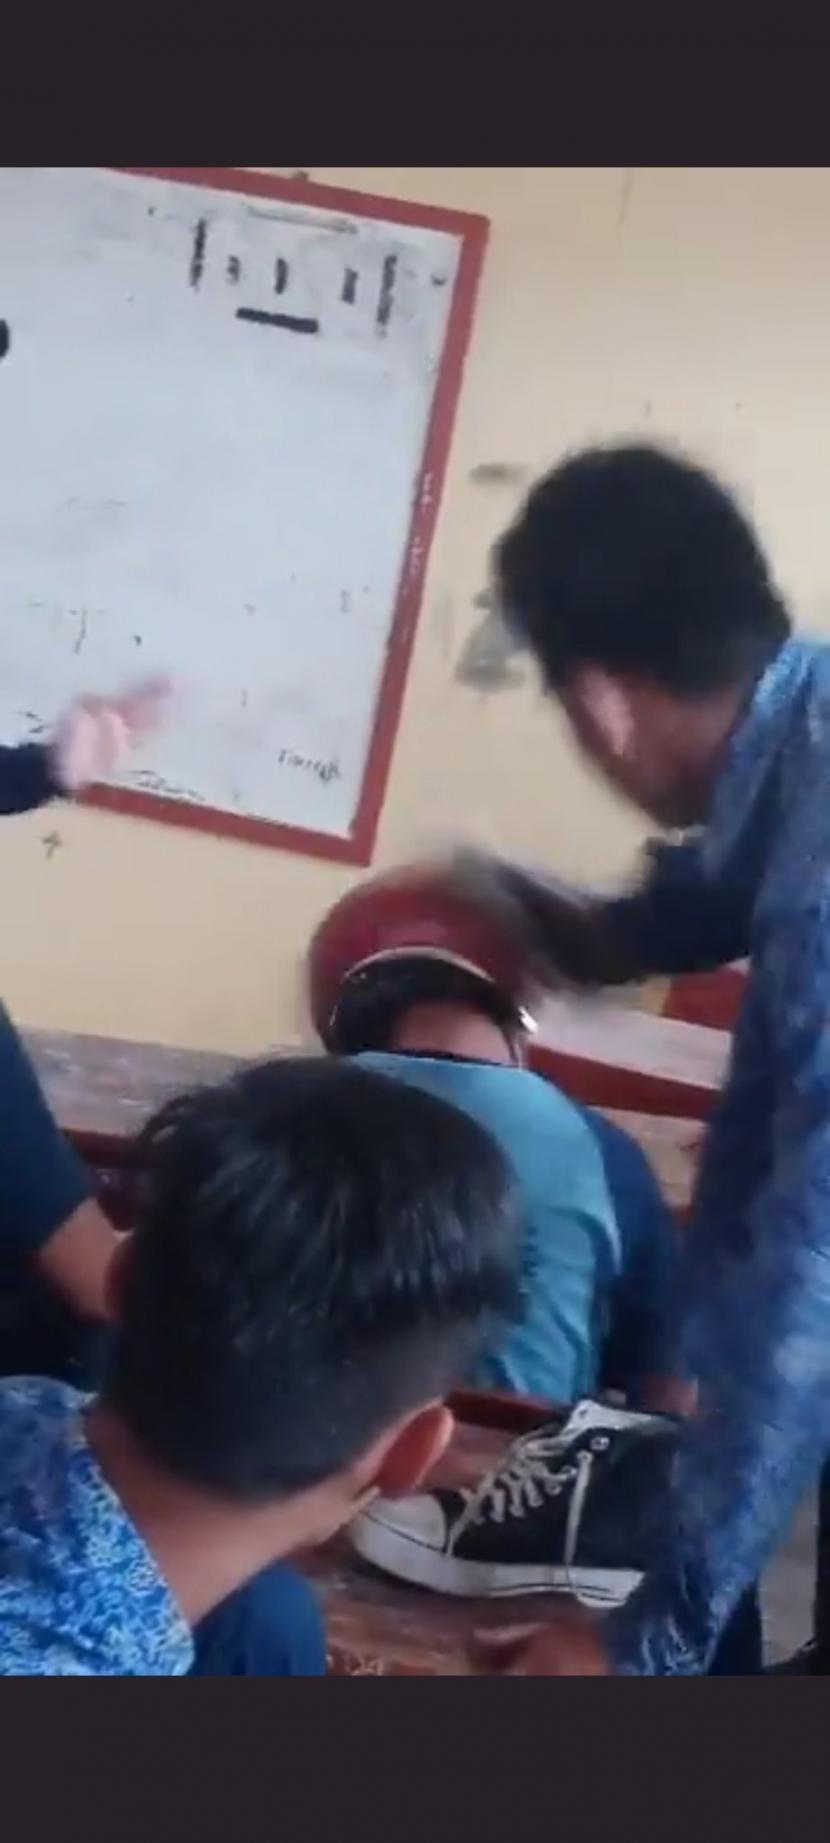 Siswa SMP Plus Baiturrahman, Kota Bandung menendang kepala temannya di dalam kelas.